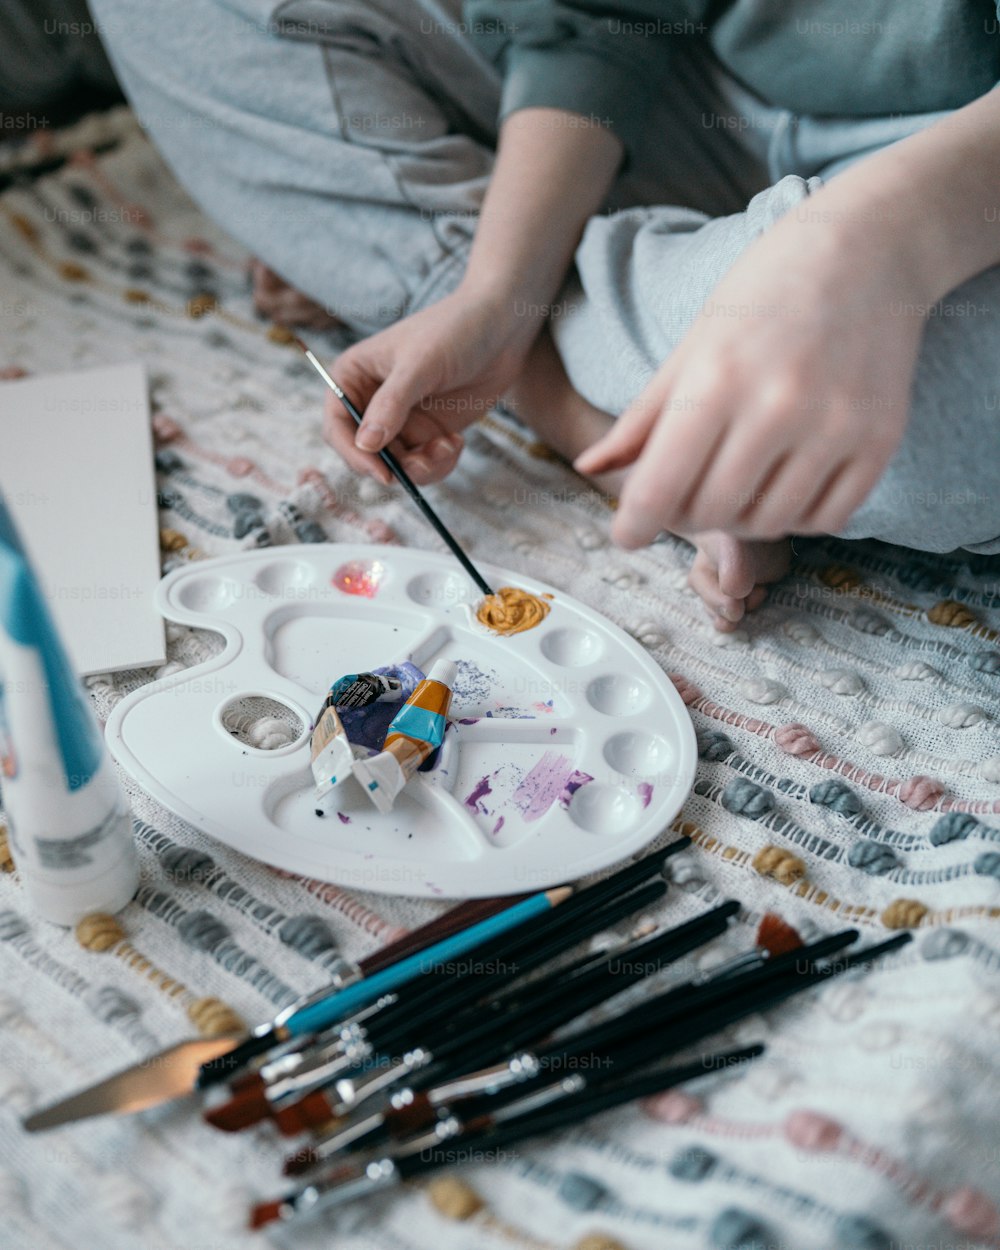 Un enfant peint sur une assiette avec des pinceaux